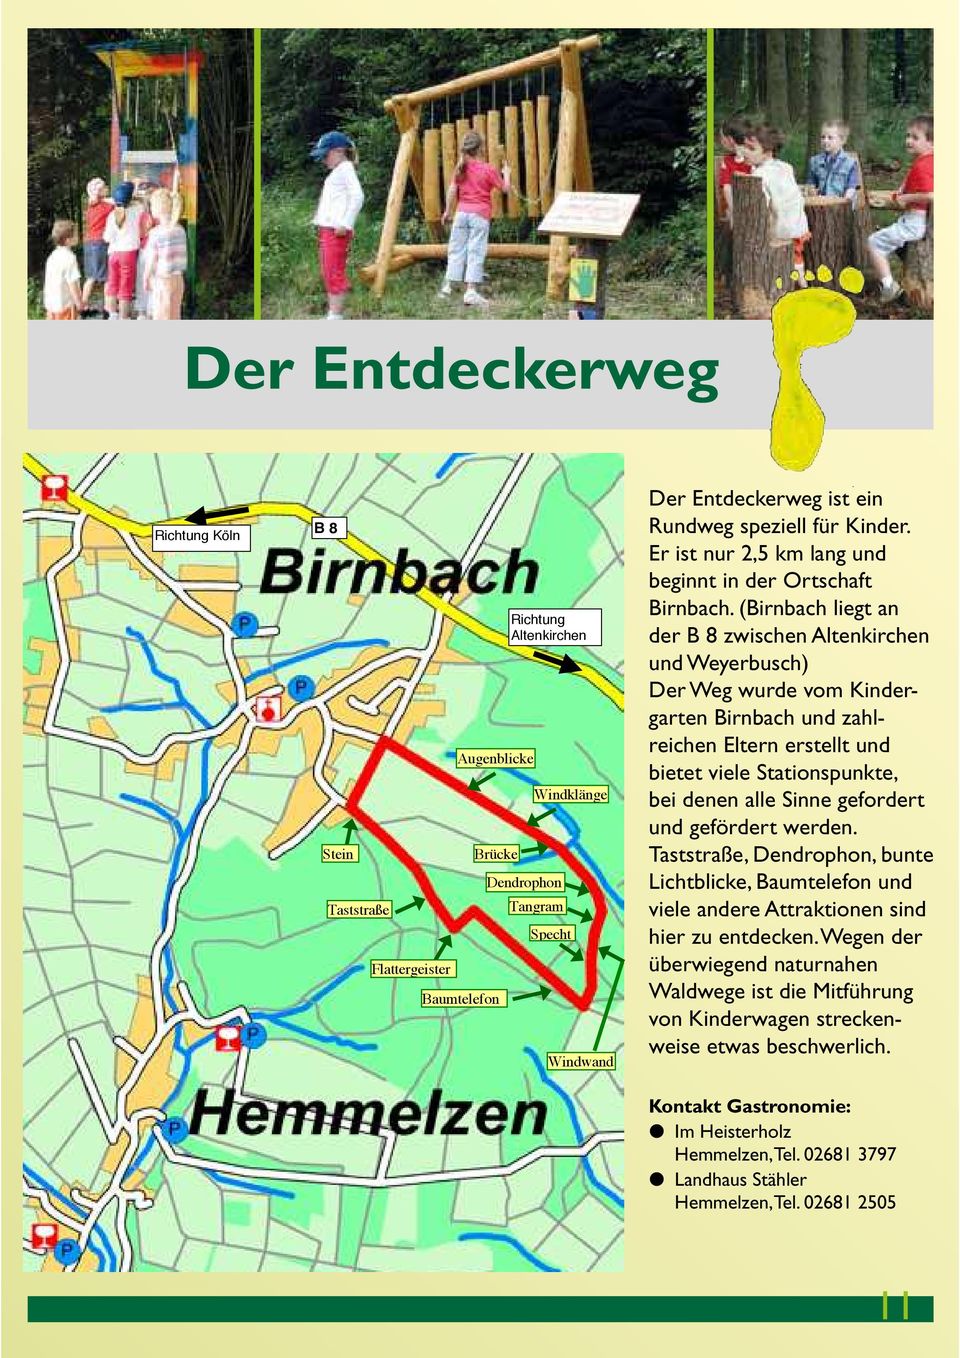 (Birnbach liegt an der B 8 zwischen Altenkirchen und Weyerbusch) Der Weg wurde vom Kindergarten Birnbach und zahlreichen Eltern erstellt und bietet viele Stationspunkte, bei denen alle Sinne